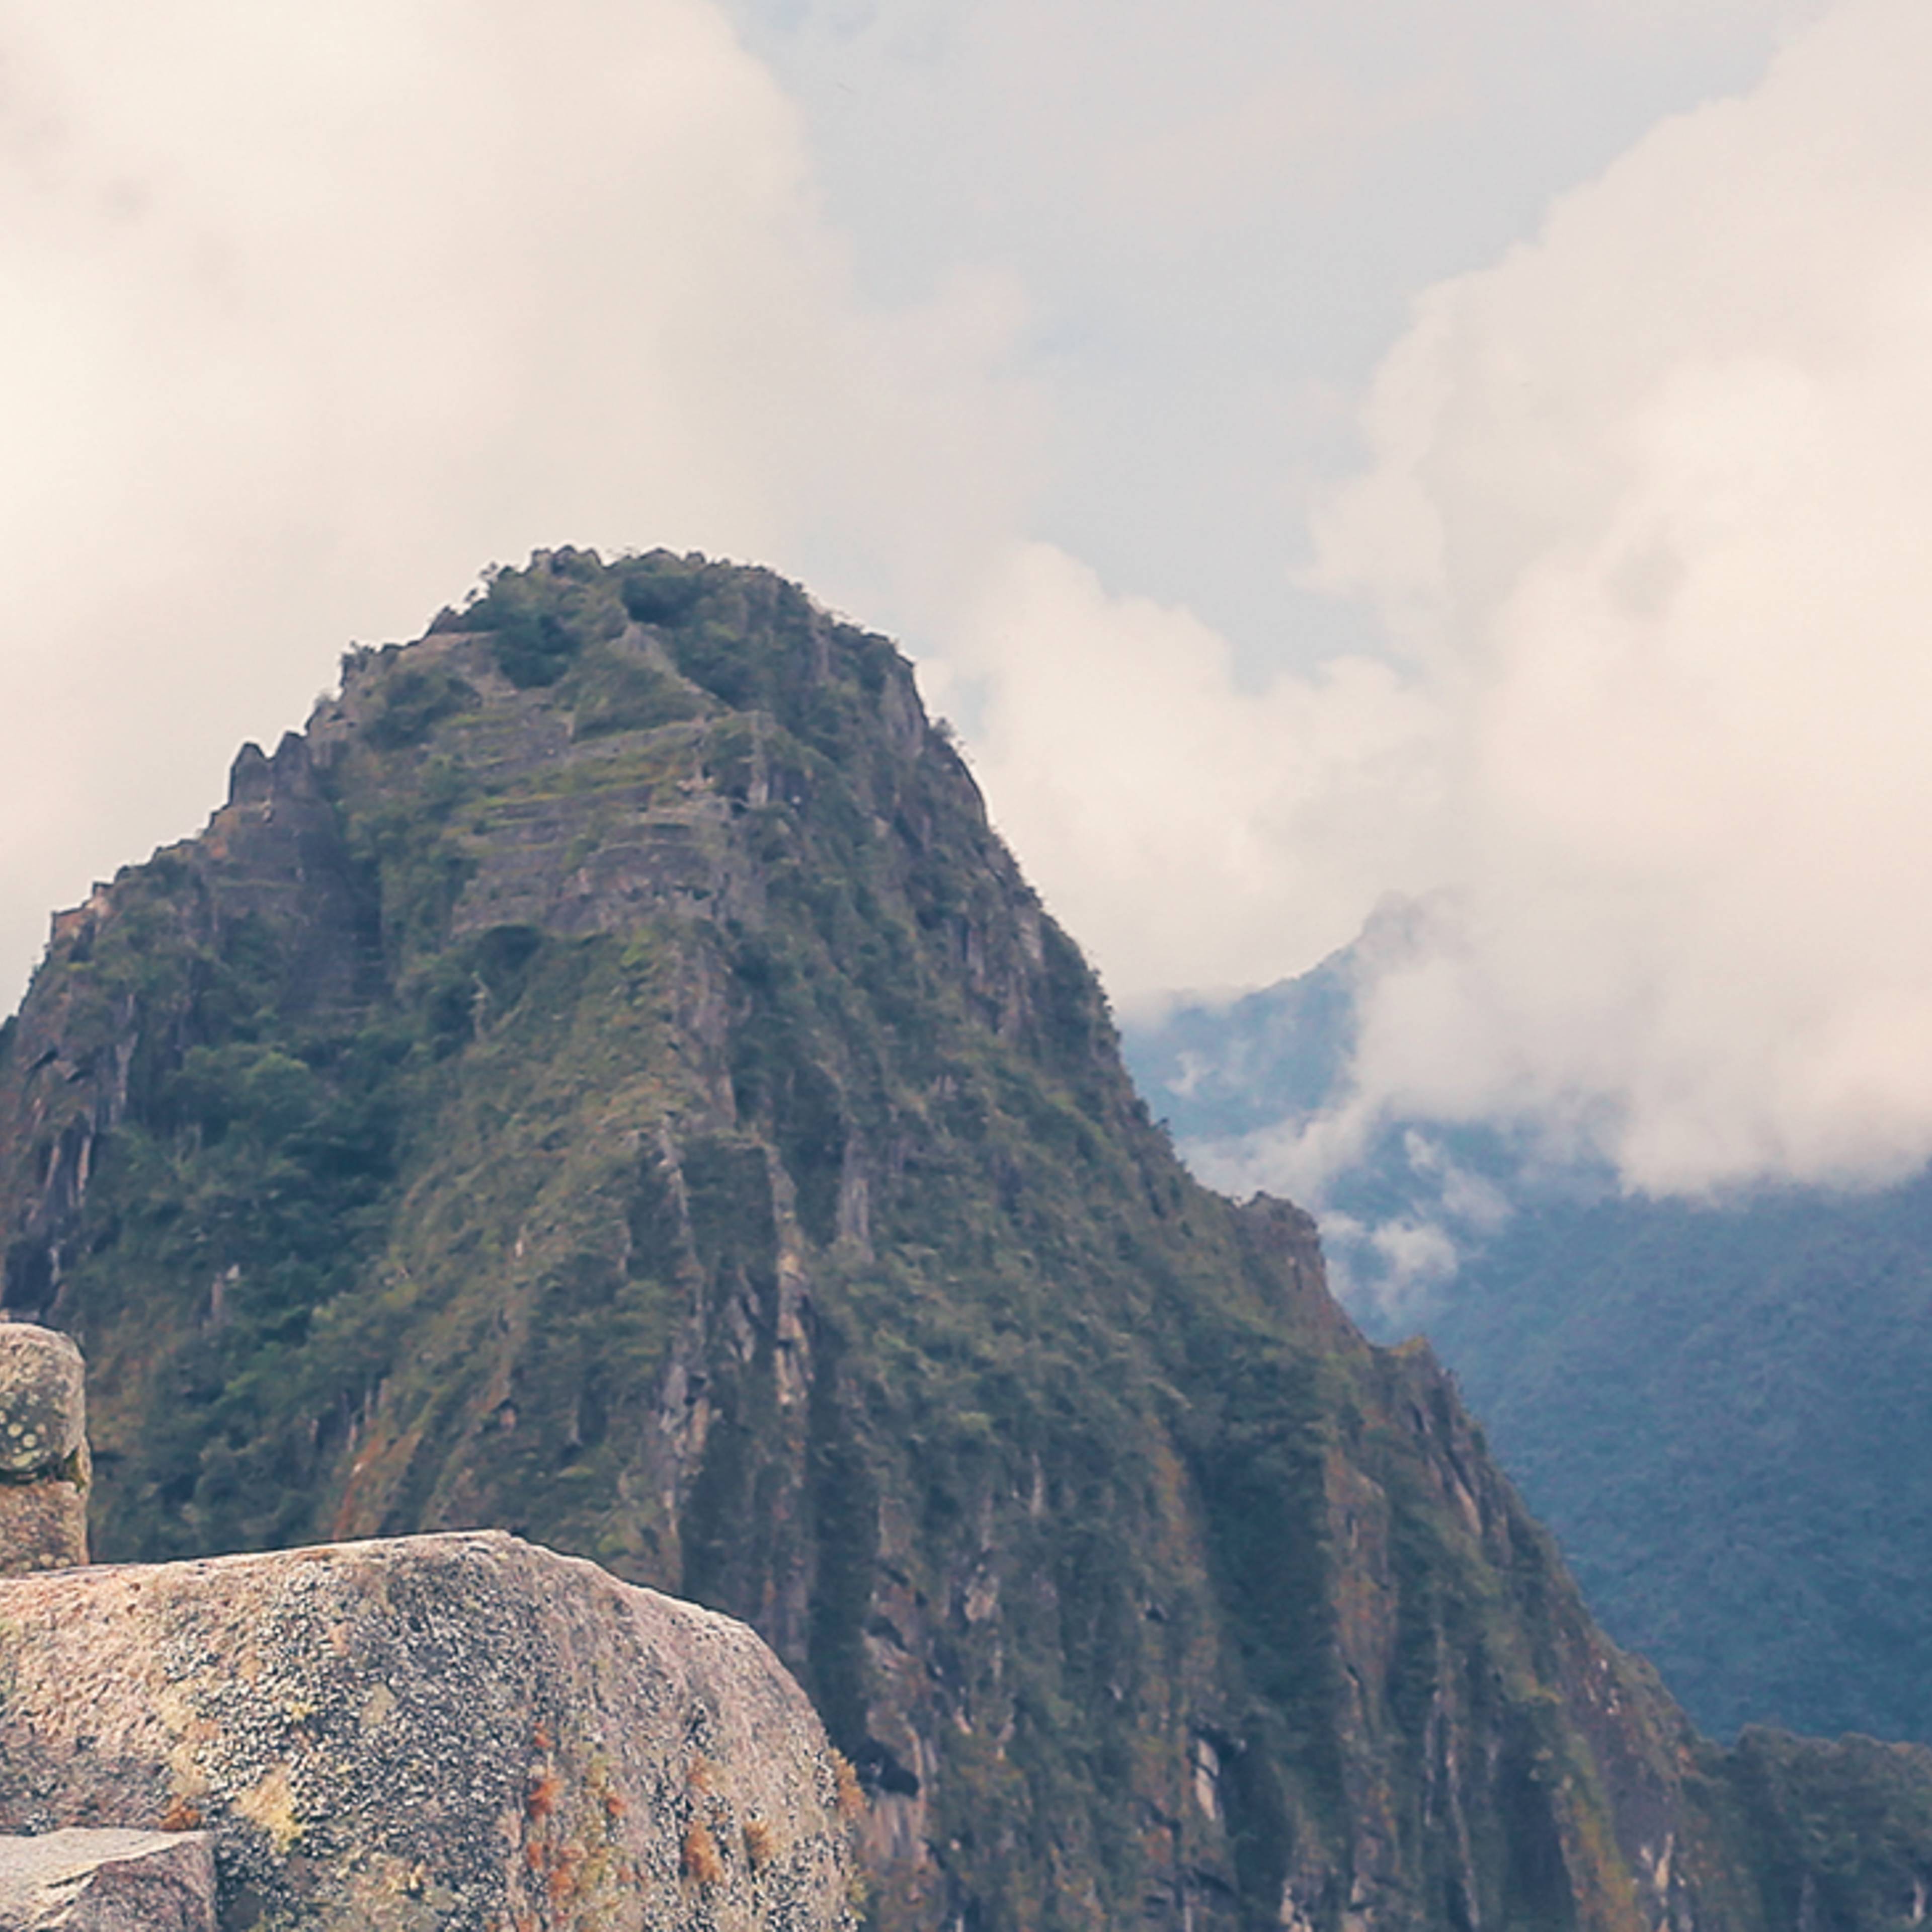 Crea il tuo viaggio in Perù in inverno, 100% su misura